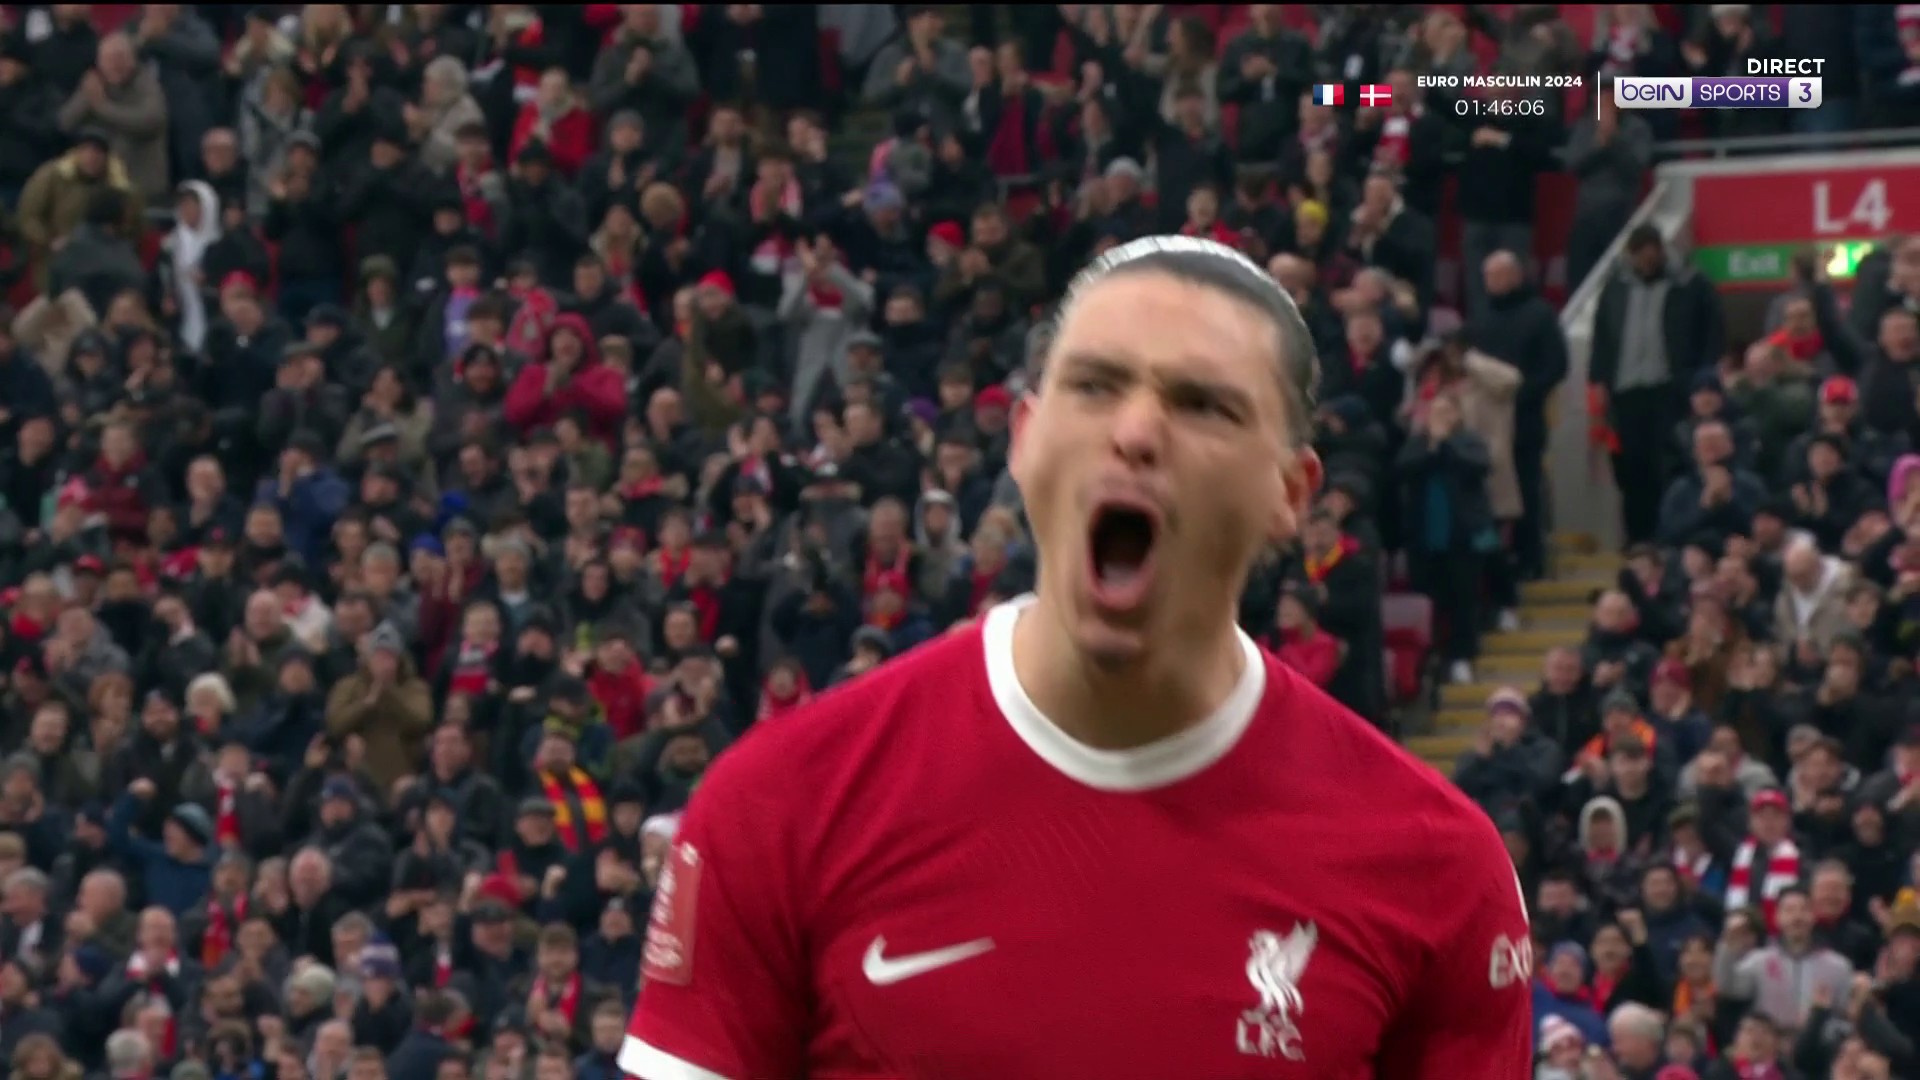 FA Cup : Magnifique mouvement collectif conclu par Darwin Núñez, Liverpool reprend l'avantage